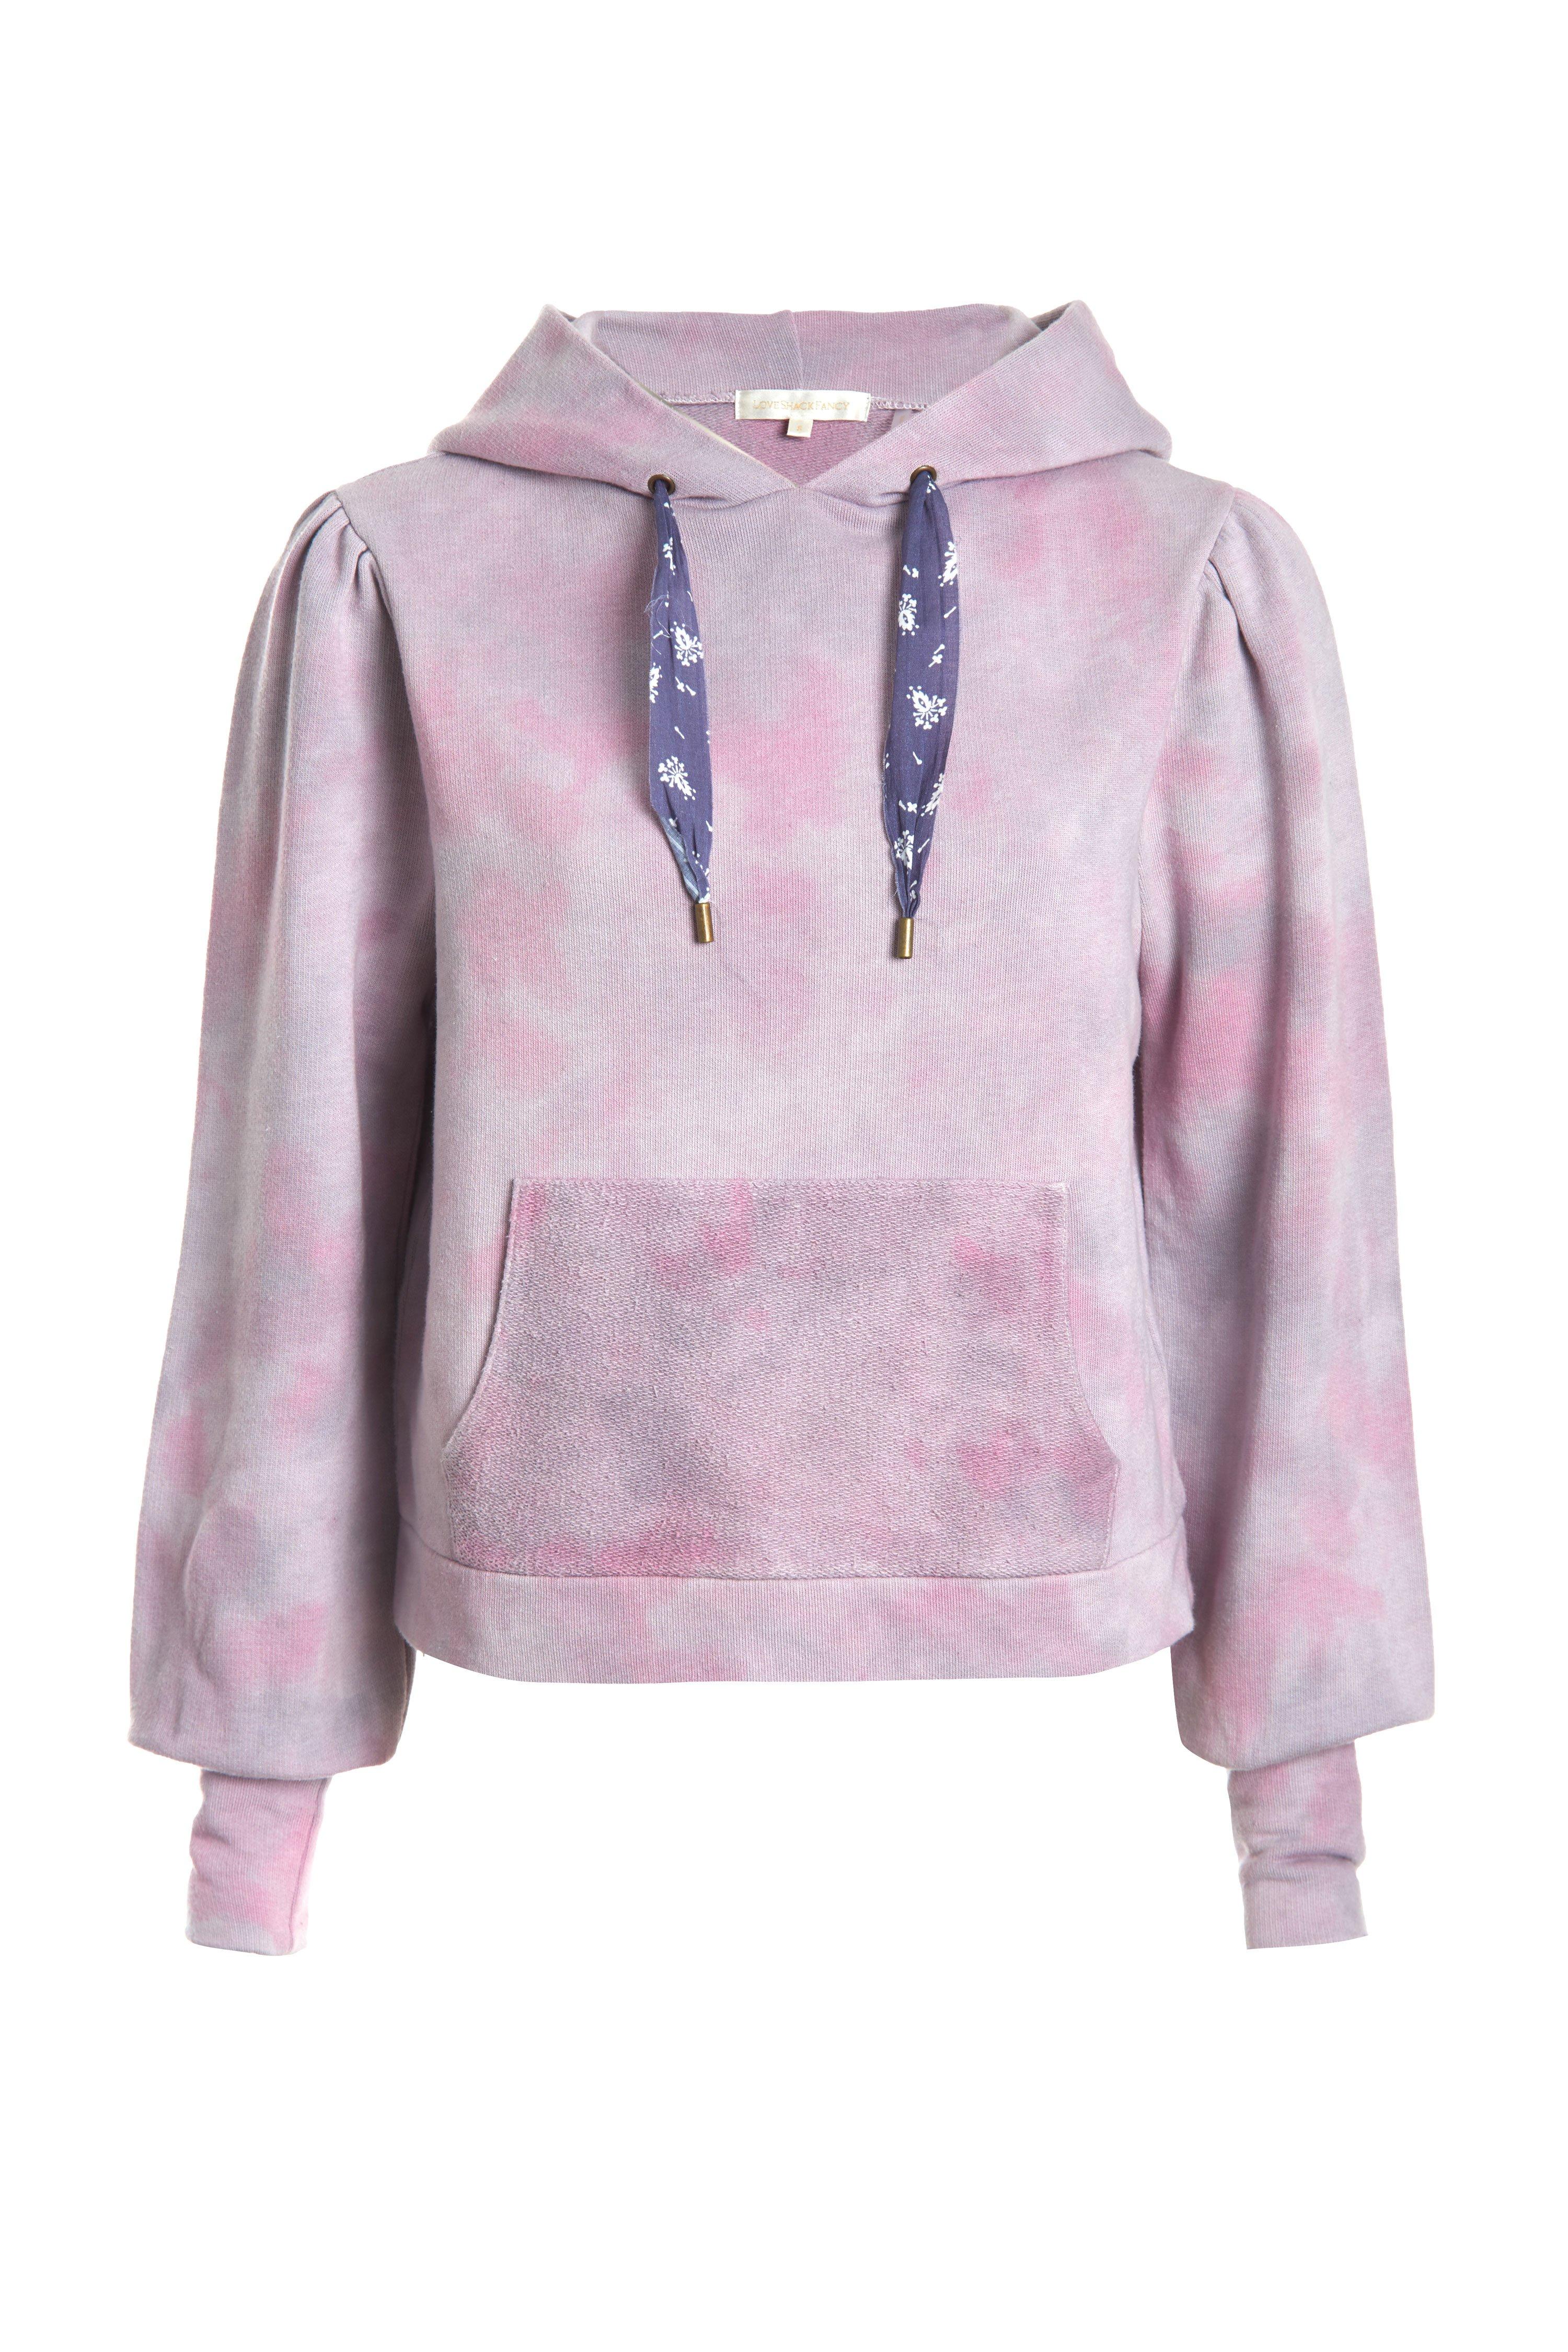 LoveShackFancy Cotton Linette Hooded Sweatshirt in Pink - Lyst